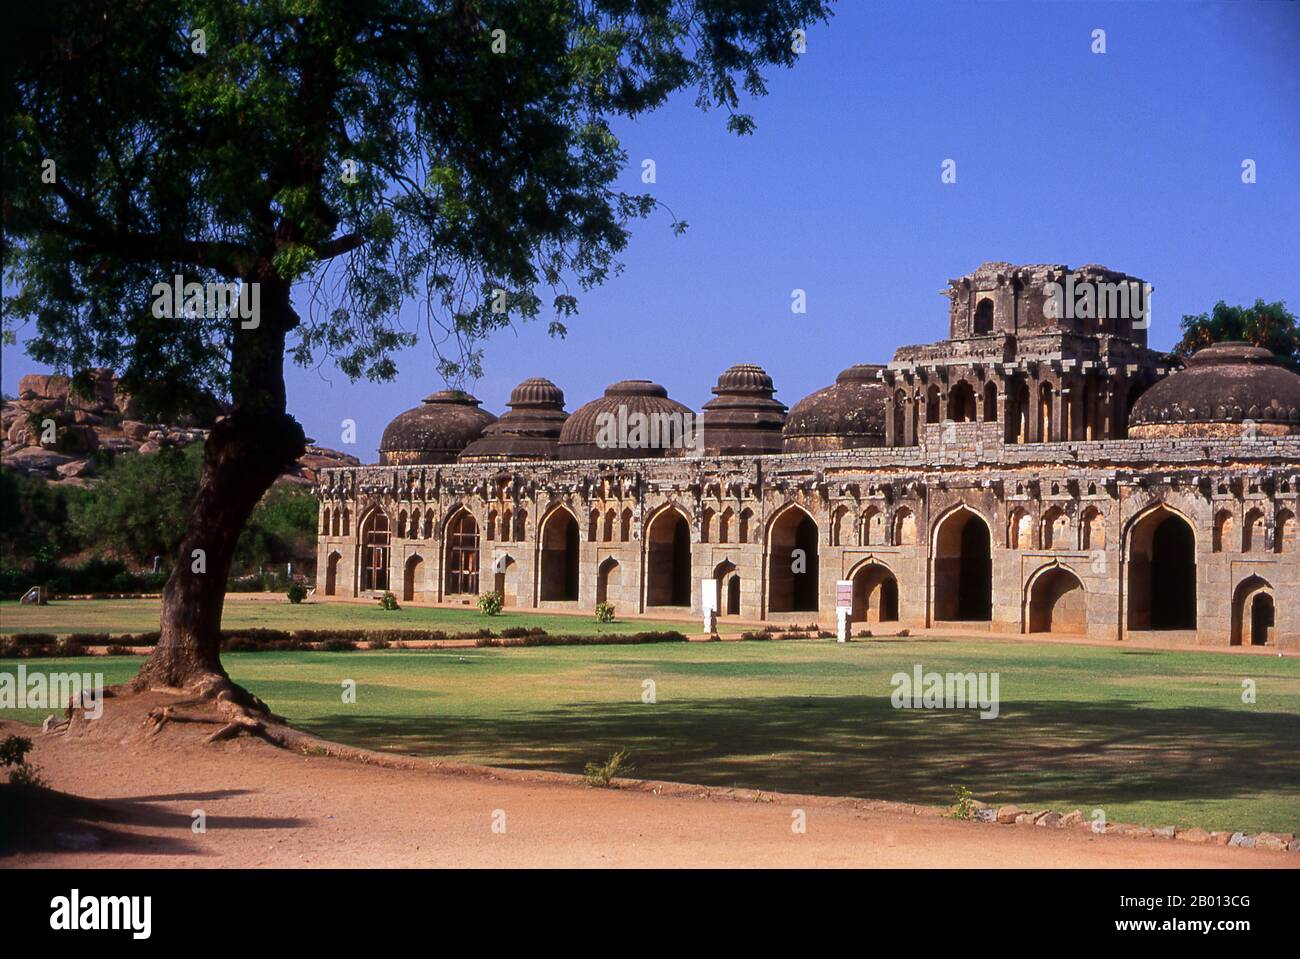 Indien: Elefantenställe, Hampi, Bundesstaat Karnataka. Die Elefantenställe wurden verwendet, um die zeremoniellen Elefanten des königlichen Haushalts zu beherbergen. Die Struktur zeigt einen deutlichen islamischen Einfluss in ihren Kuppeln und gewölbten Toren. Hampi ist ein Dorf im nördlichen Bundesstaat Karnataka. Es befindet sich in den Ruinen von Vijayanagara, der ehemaligen Hauptstadt des Vijayanagara-Reiches. Vor der Stadt Vijayanagara ist es weiterhin ein wichtiges religiöses Zentrum, in dem der Virupaksha-Tempel sowie mehrere andere Denkmäler der Altstadt untergebracht sind. Stockfoto